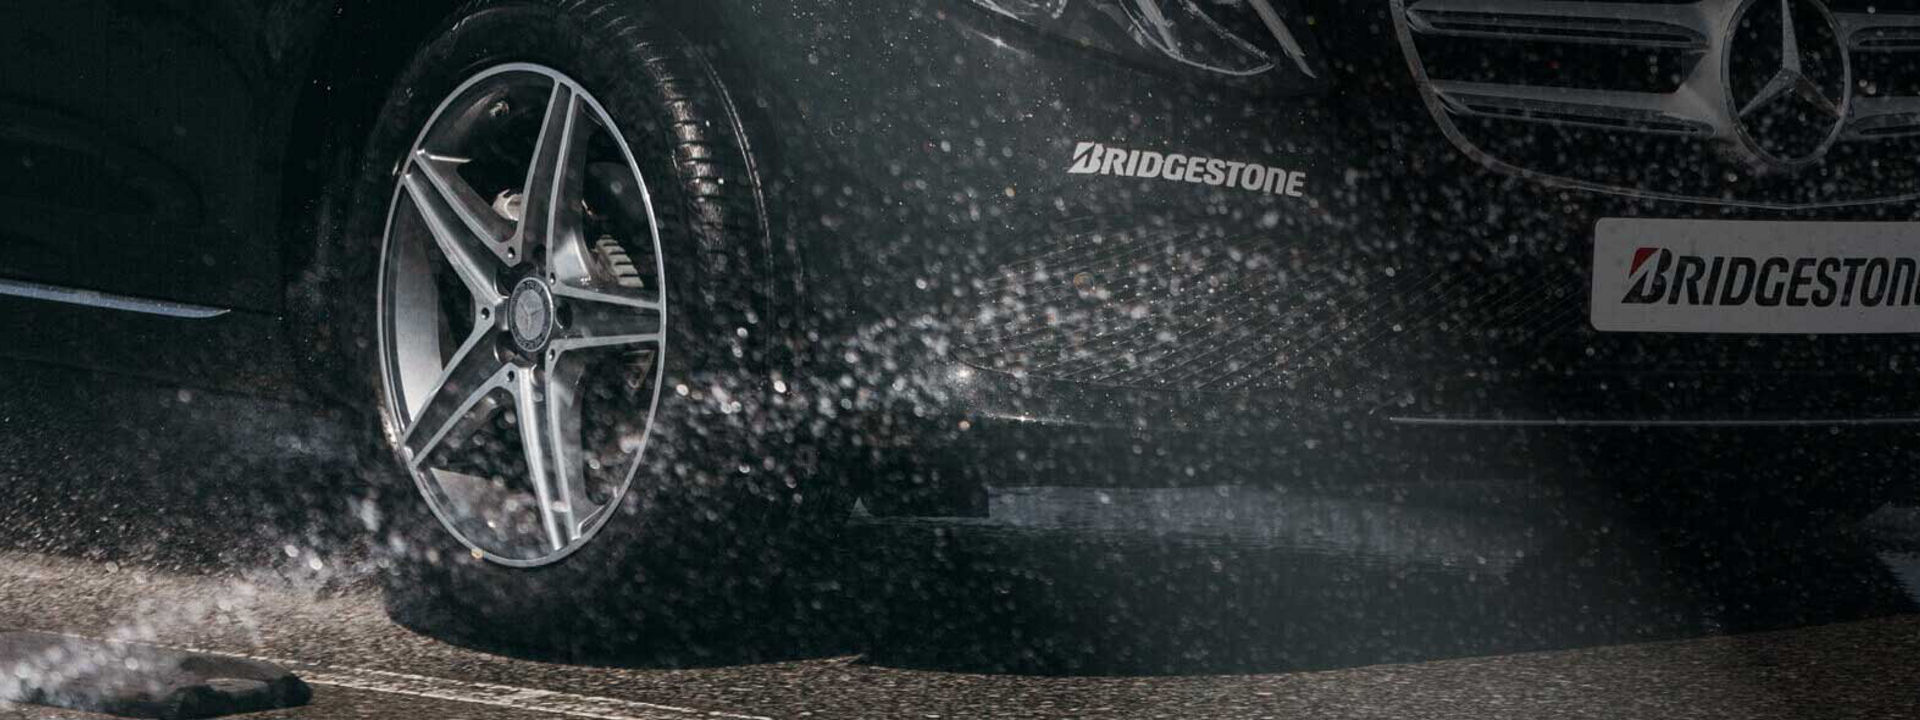 Den här bilden är en närbild av ett Bridgestone Turanza-däck som kör i våta förhållanden